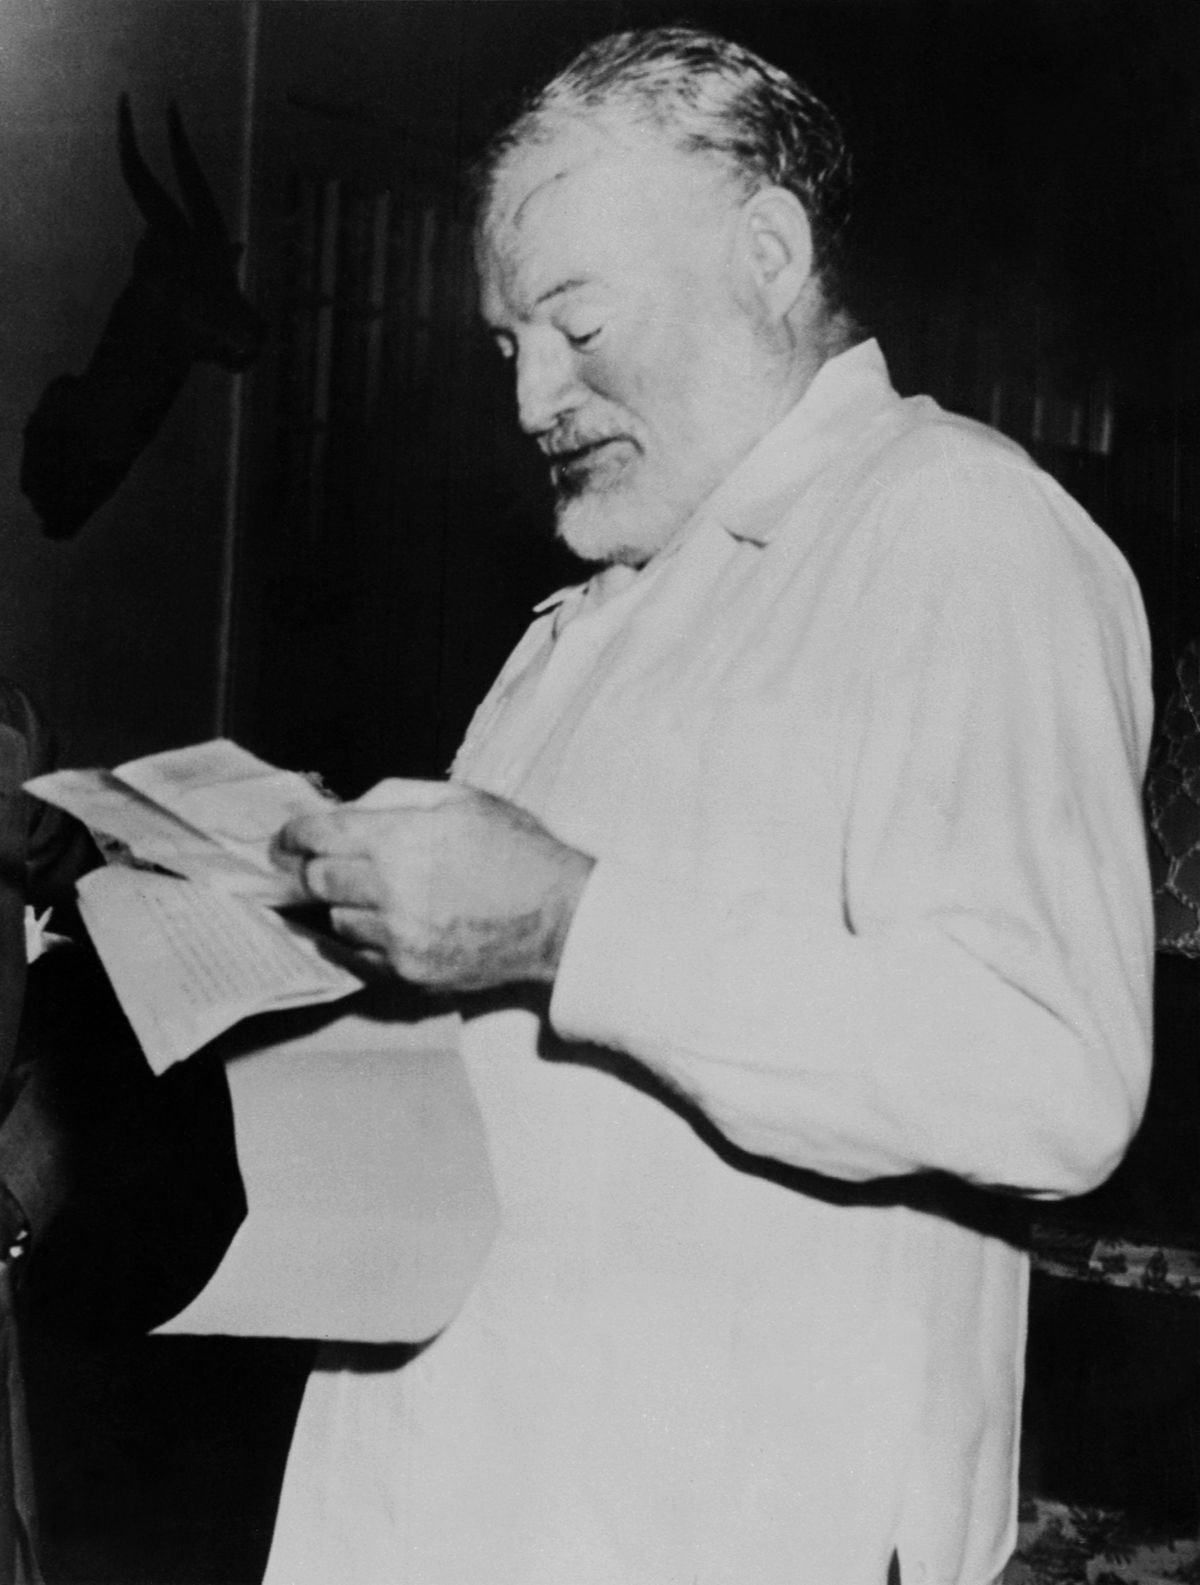 Una imagen de 1952 del escritor norteamericano Ernest Hemingway cuando ganó el premio Pulitzer por su novela corta "The Old men and the sea" ("El viejo y el mar"). (Foto: AFP)